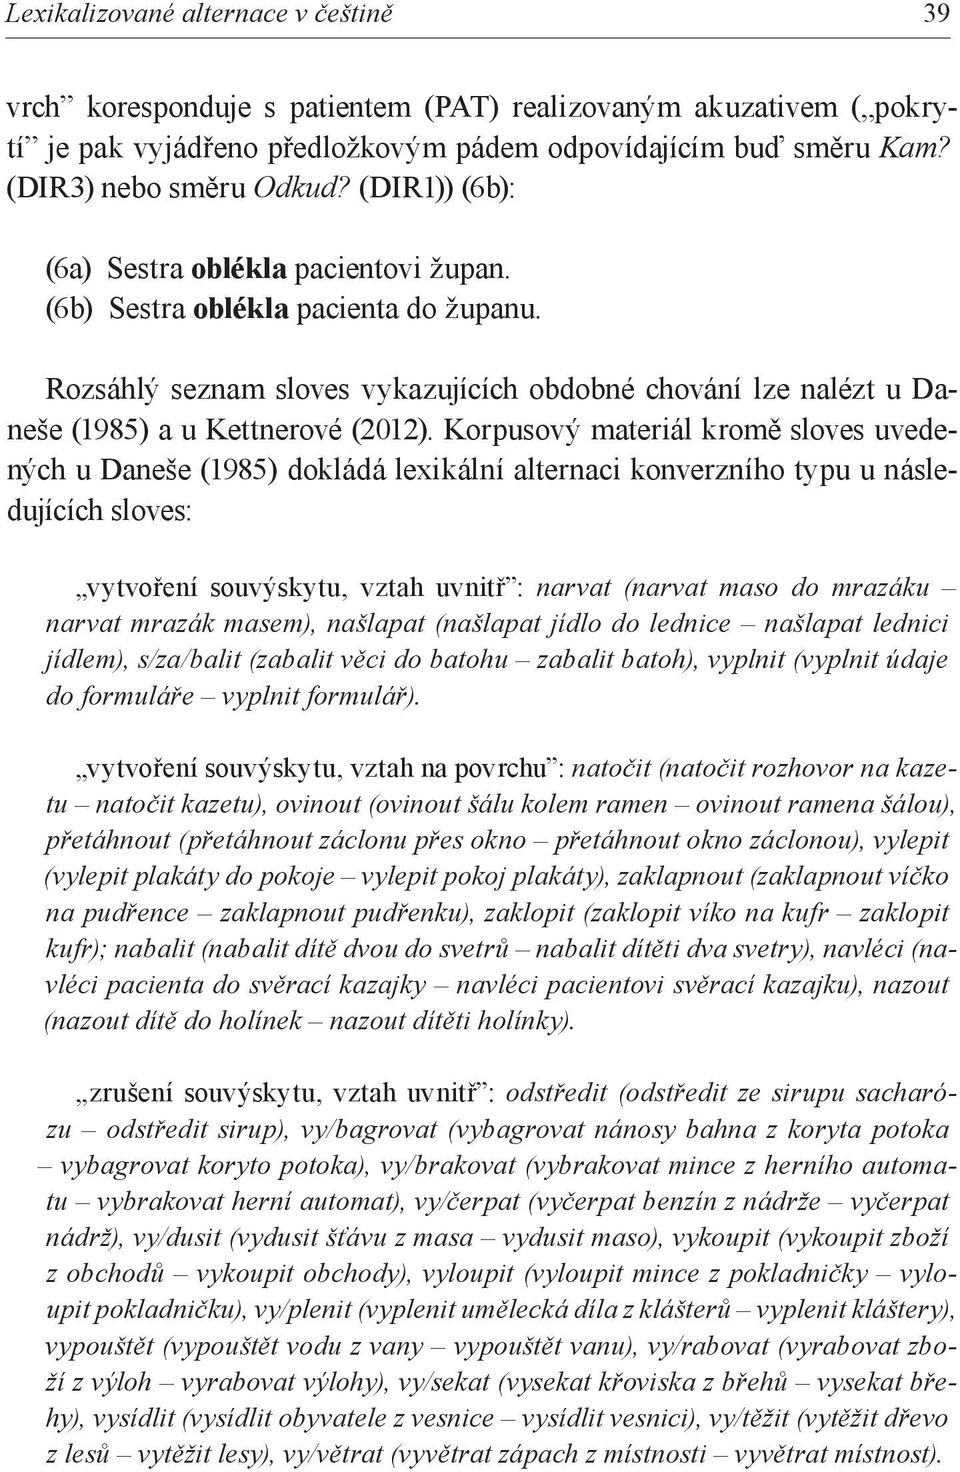 Korpusový materiál kromě sloves uvedených u Daneše (1985) dokládá lexikální alternaci konverzního typu u následujících sloves: vytvoření souvýskytu, vztah uvnitř : narvat (narvat maso do mrazáku